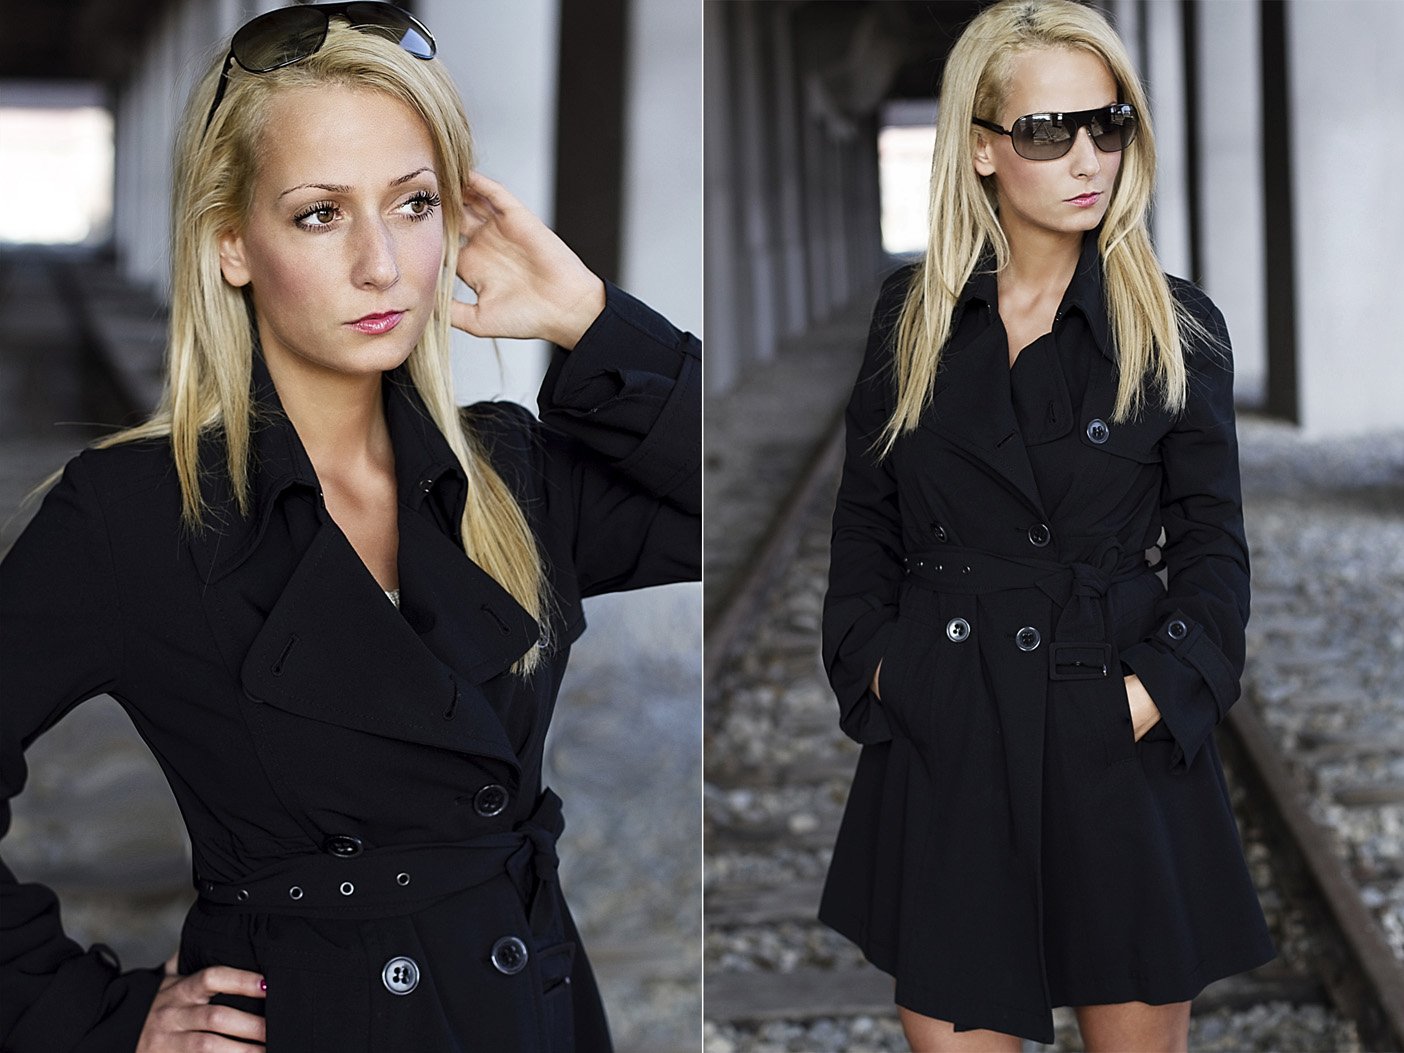 Werbefotografie weibliche Person mit langen blonden Haaren im schwarzen Trenchcoat und Sonnenbrille